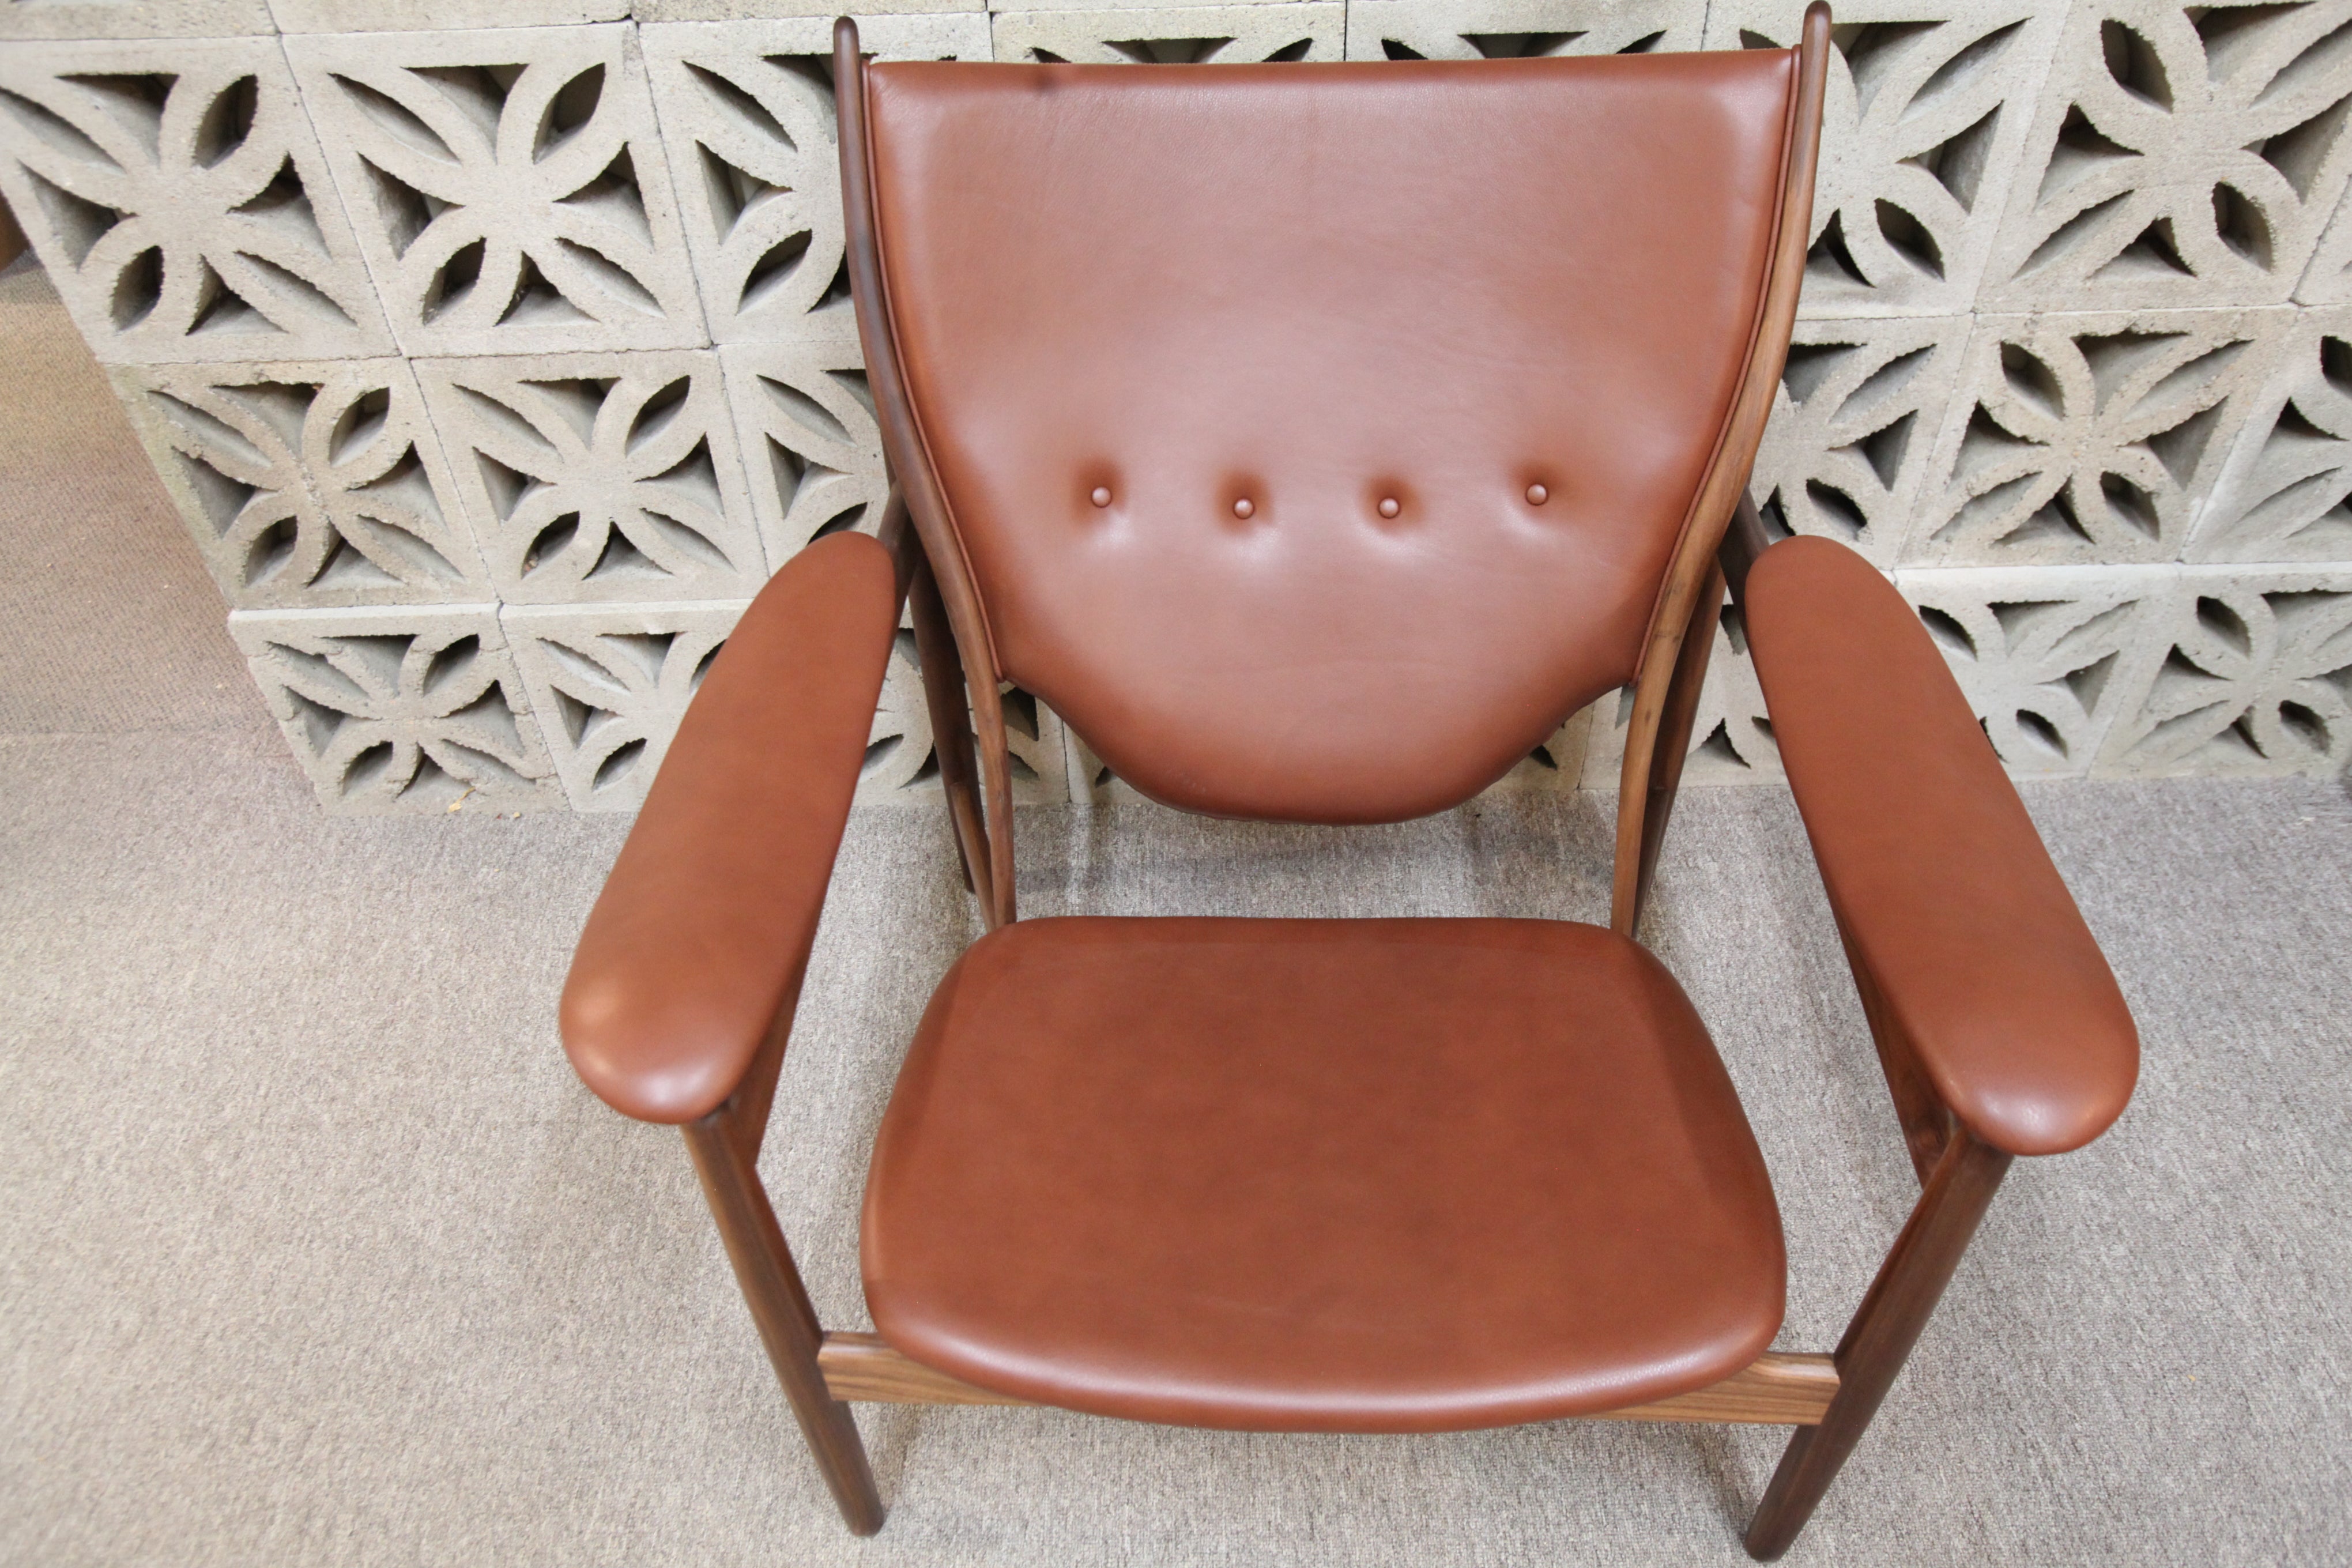 Replica Finn Juhl Chieftain Chair (walnut/brown leather) (40.5"W x 37"H x 35"D)